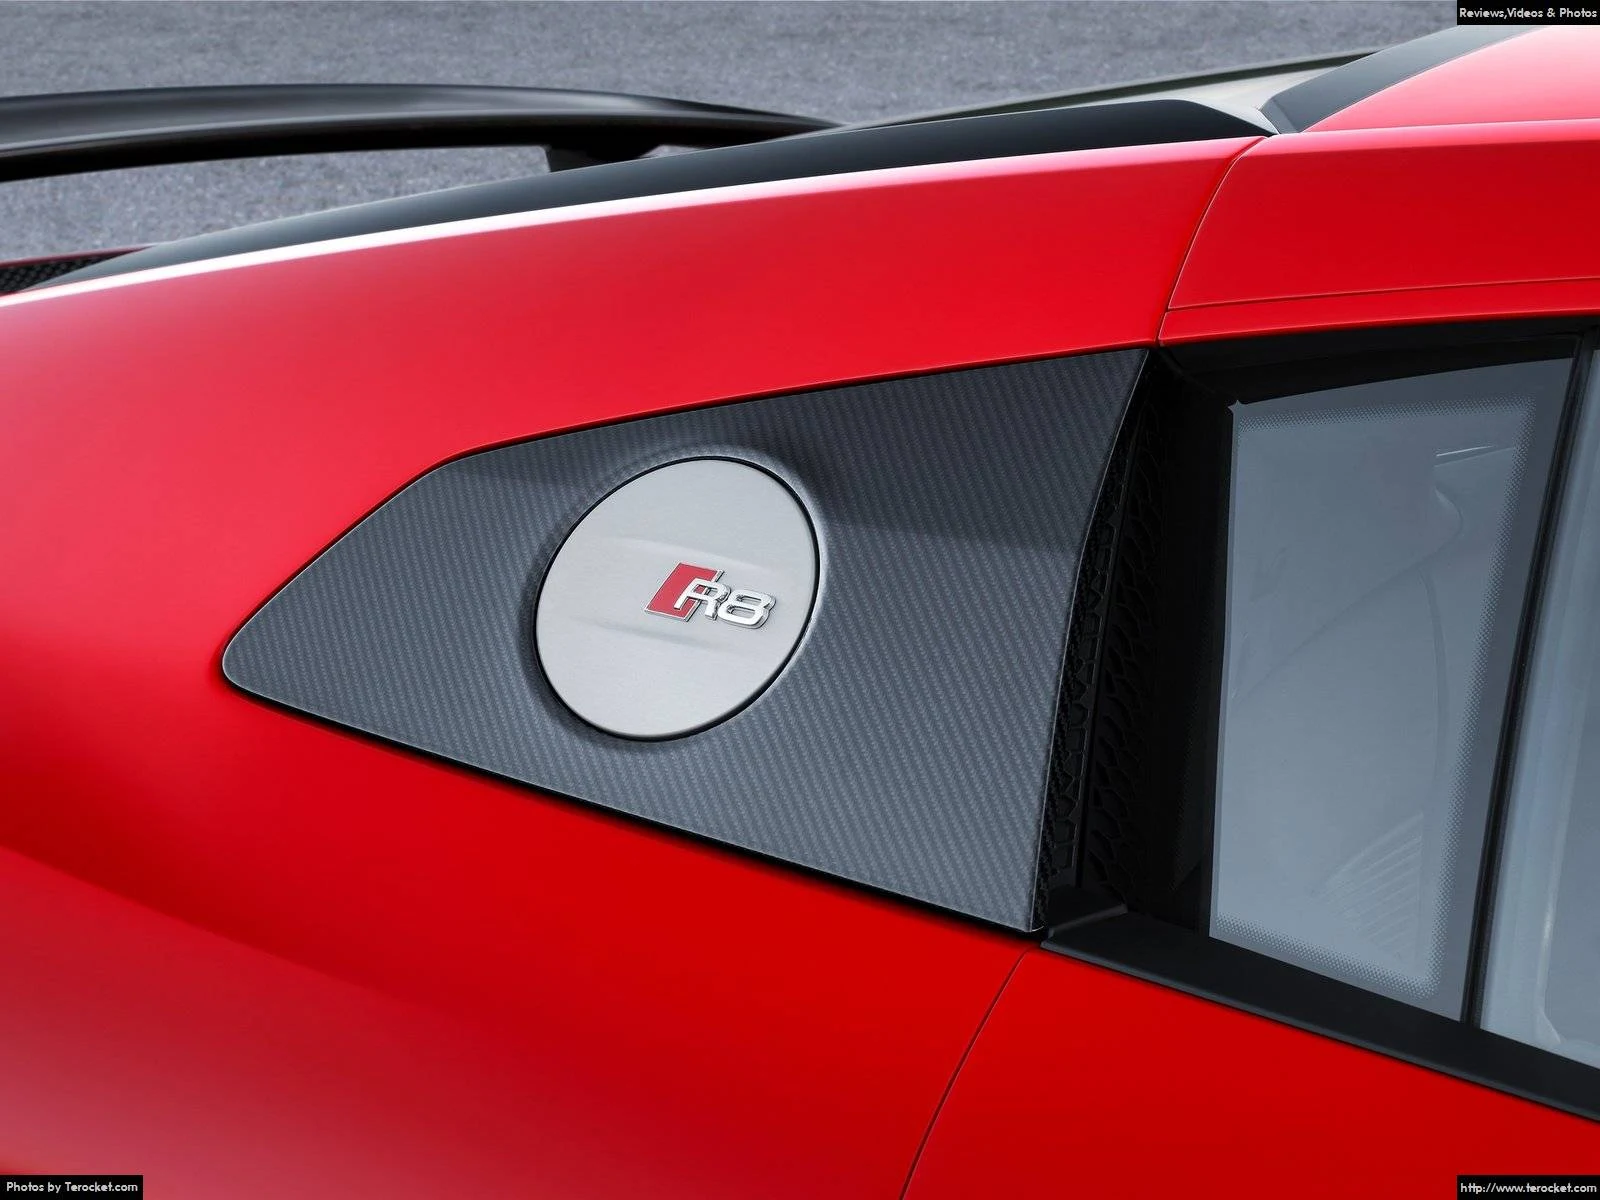 Hình ảnh xe ô tô Audi R8 V10 plus 2016 & nội ngoại thất